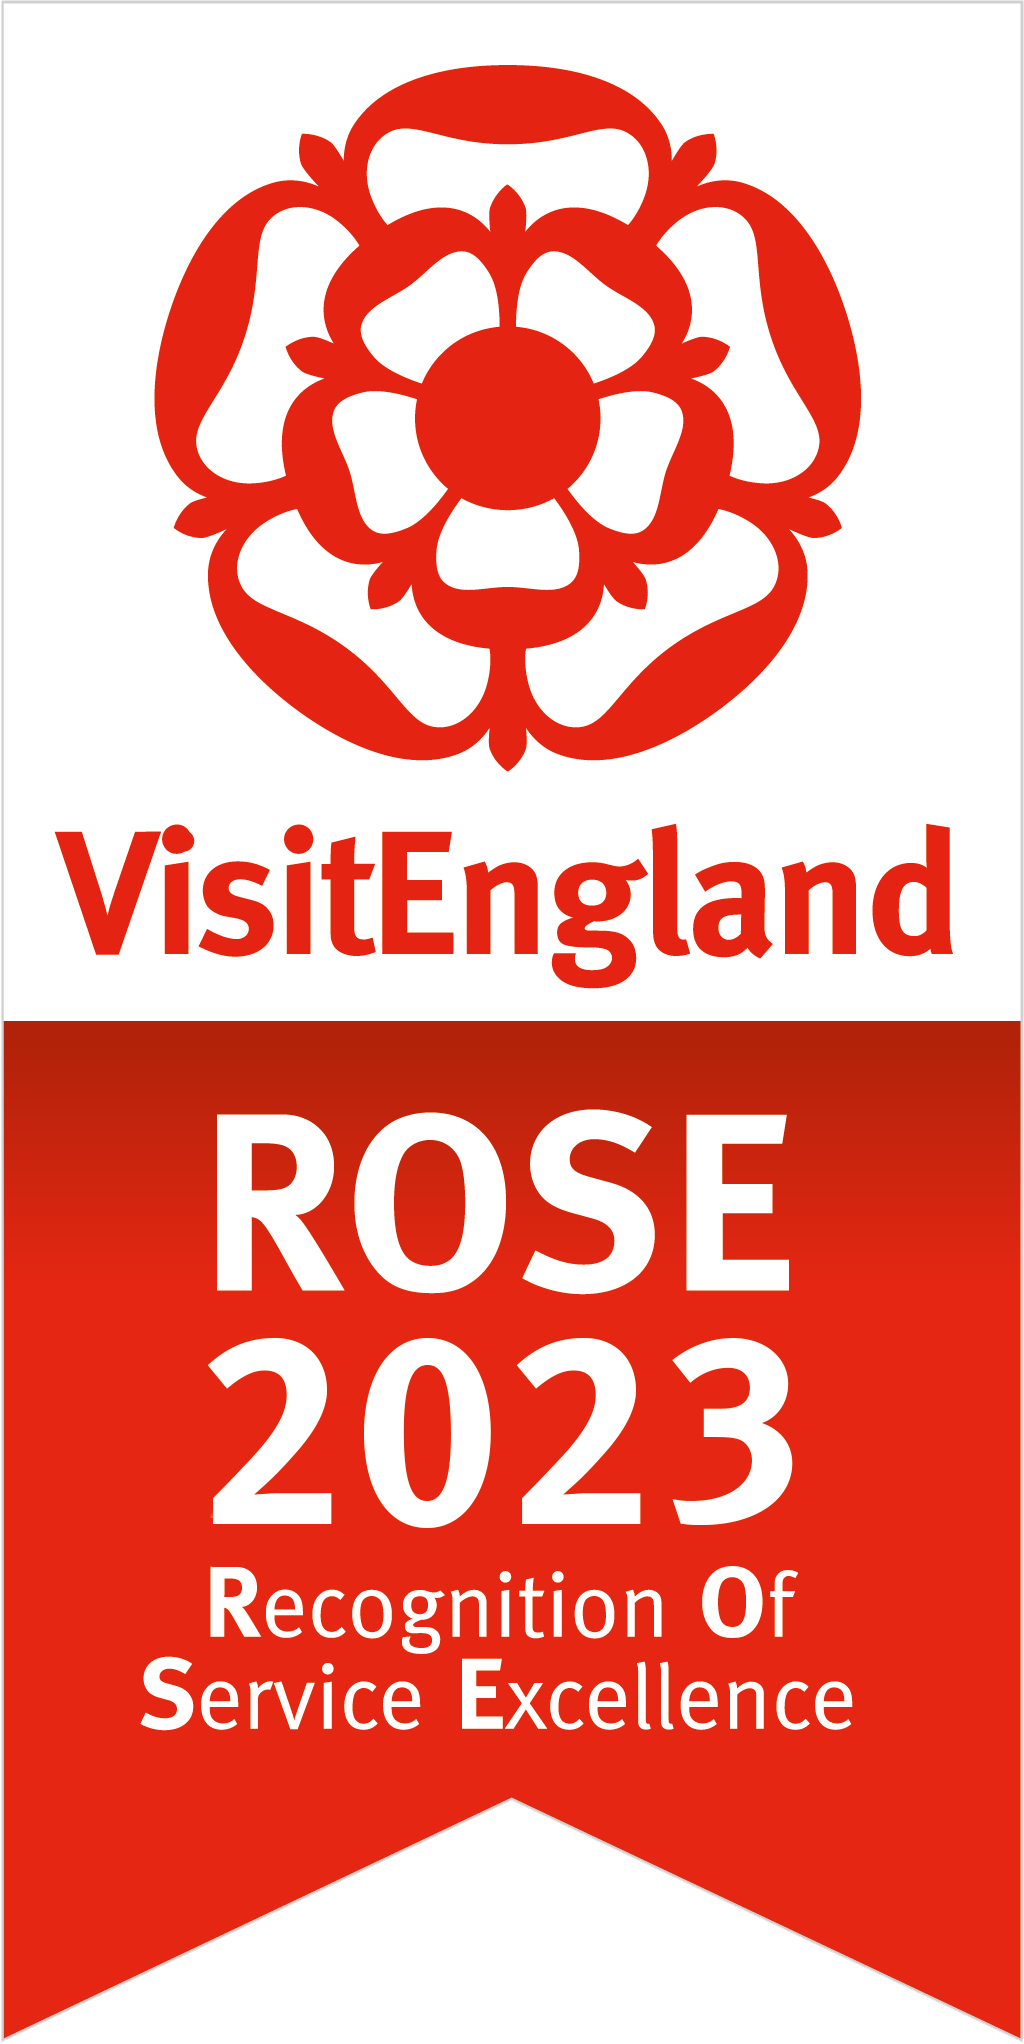 Visit England Rose Award